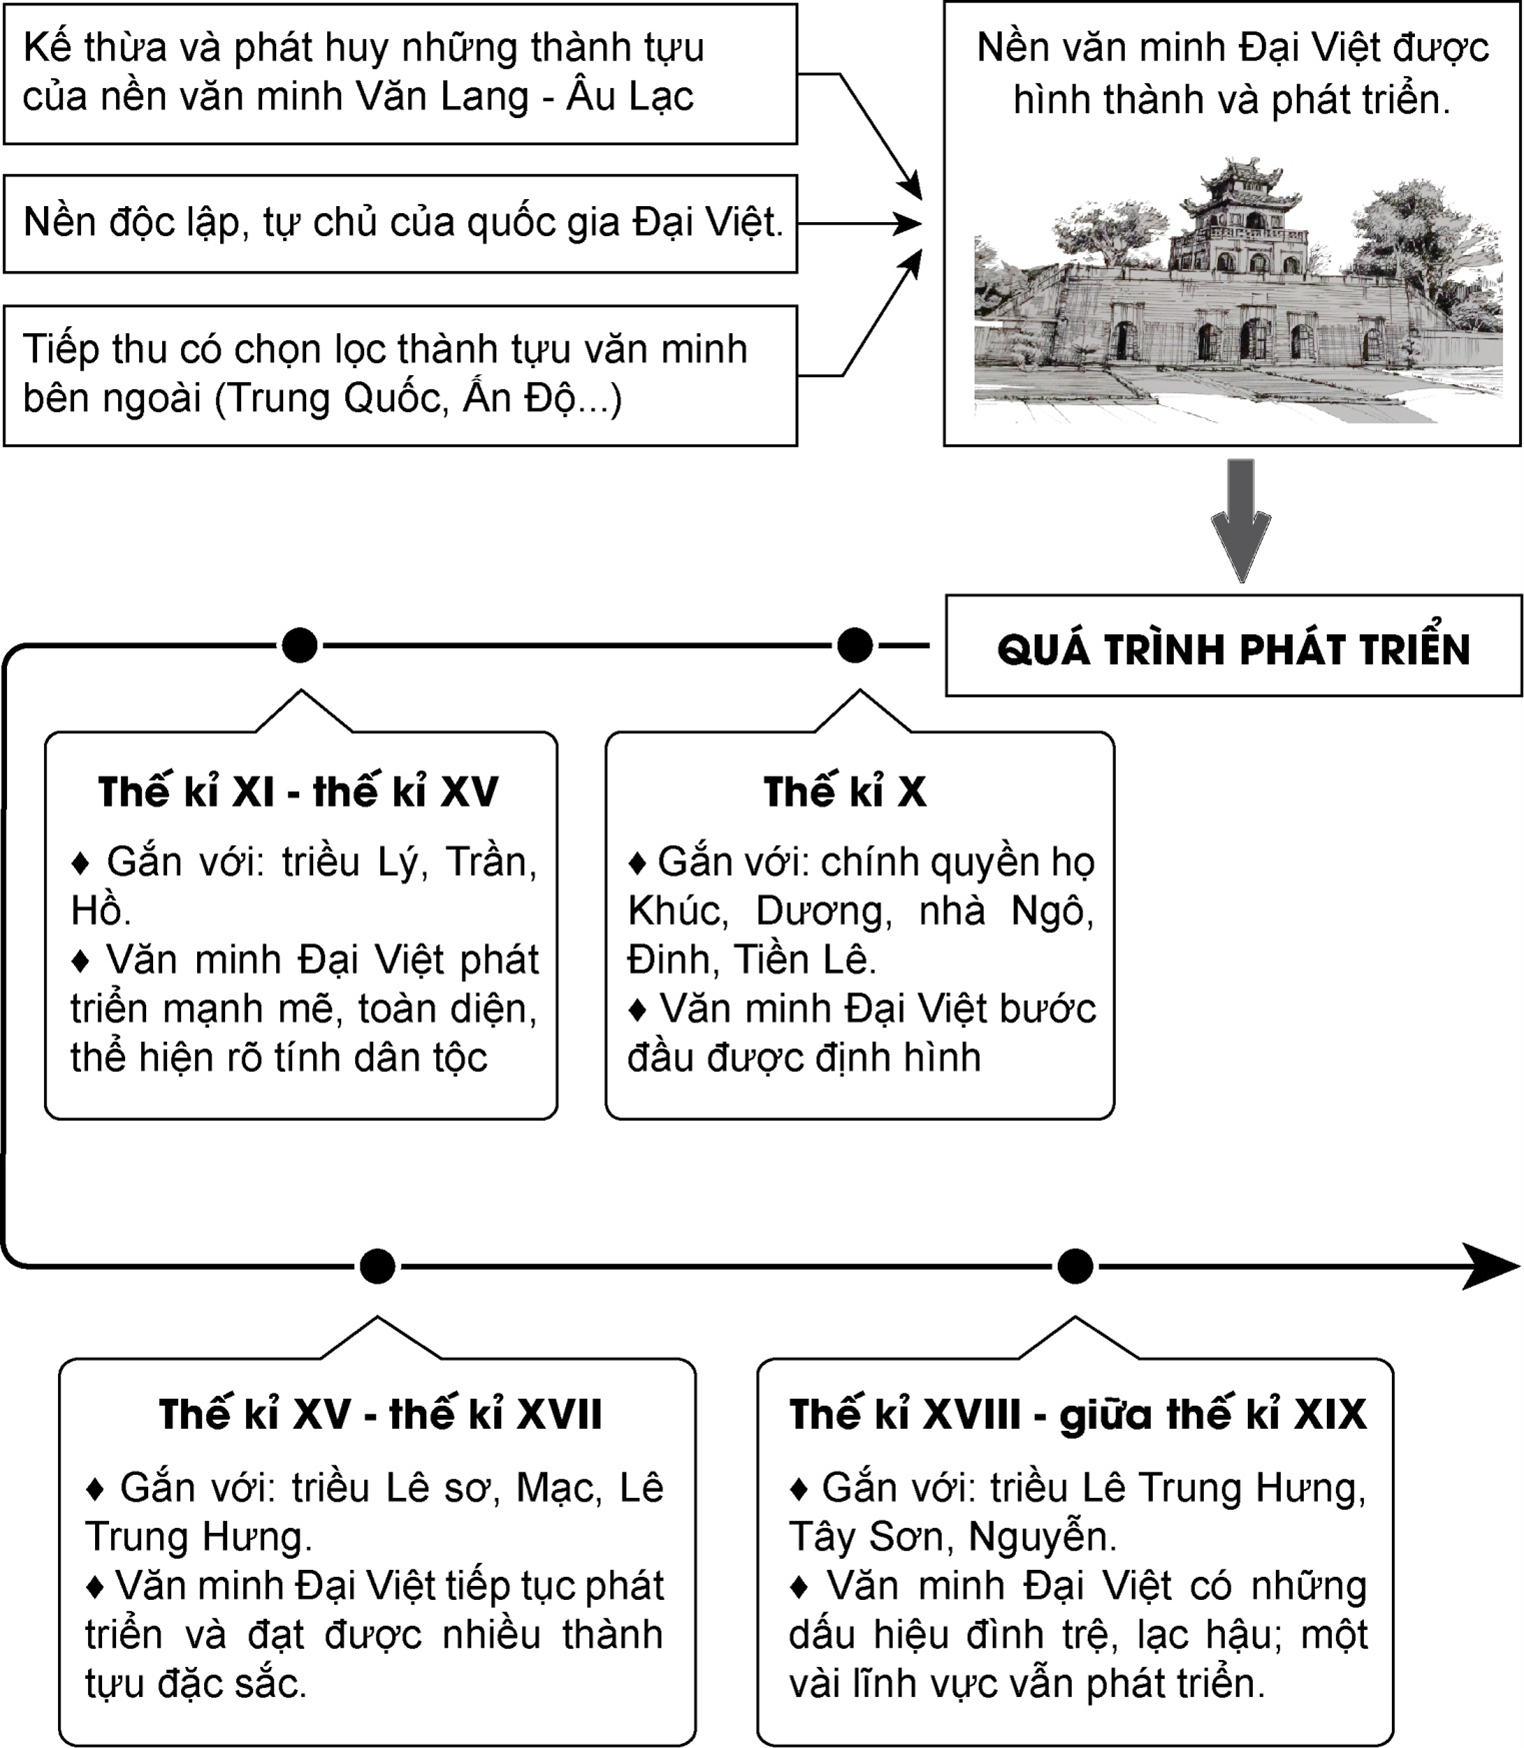 Trong lịch sử Việt Nam, thường có những câu chuyện về quá trình hình thành và phát triển của các làng. Chúng ta có thể dễ dàng tạo ra sơ đồ tư duy về Cơ sở hình thành, Quá trình phát triển các dấu ấn lịch sử và văn hóa của một bài làng, thật thú vị đúng không nào.